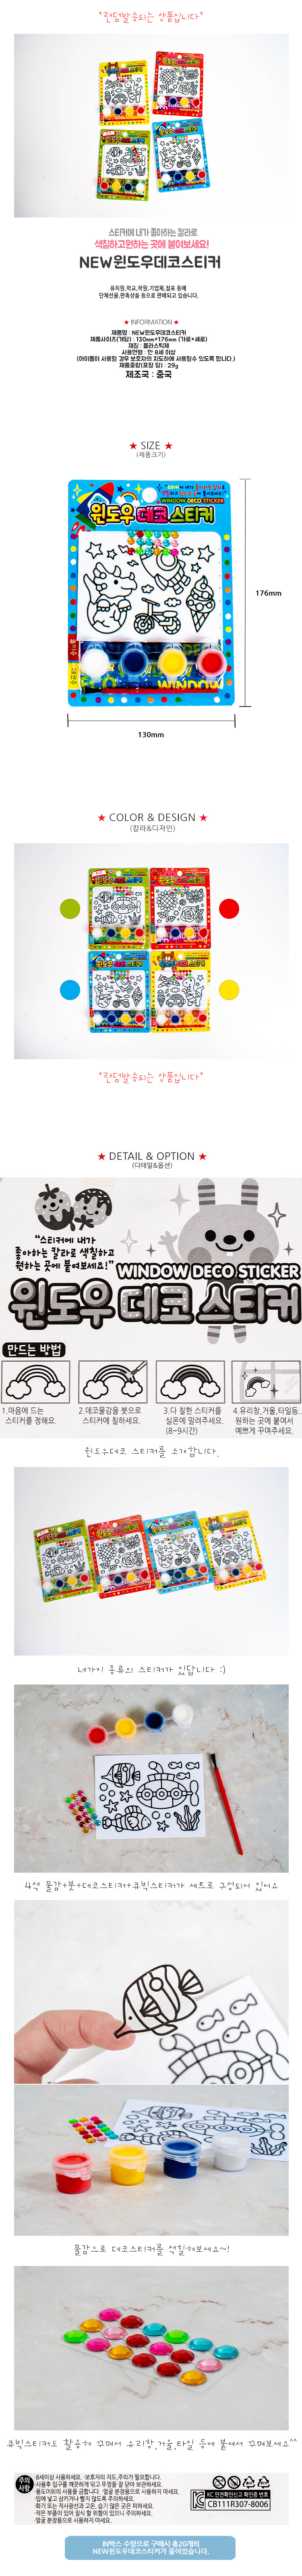 1000NEW_window_deco_sticker_150626.jpg